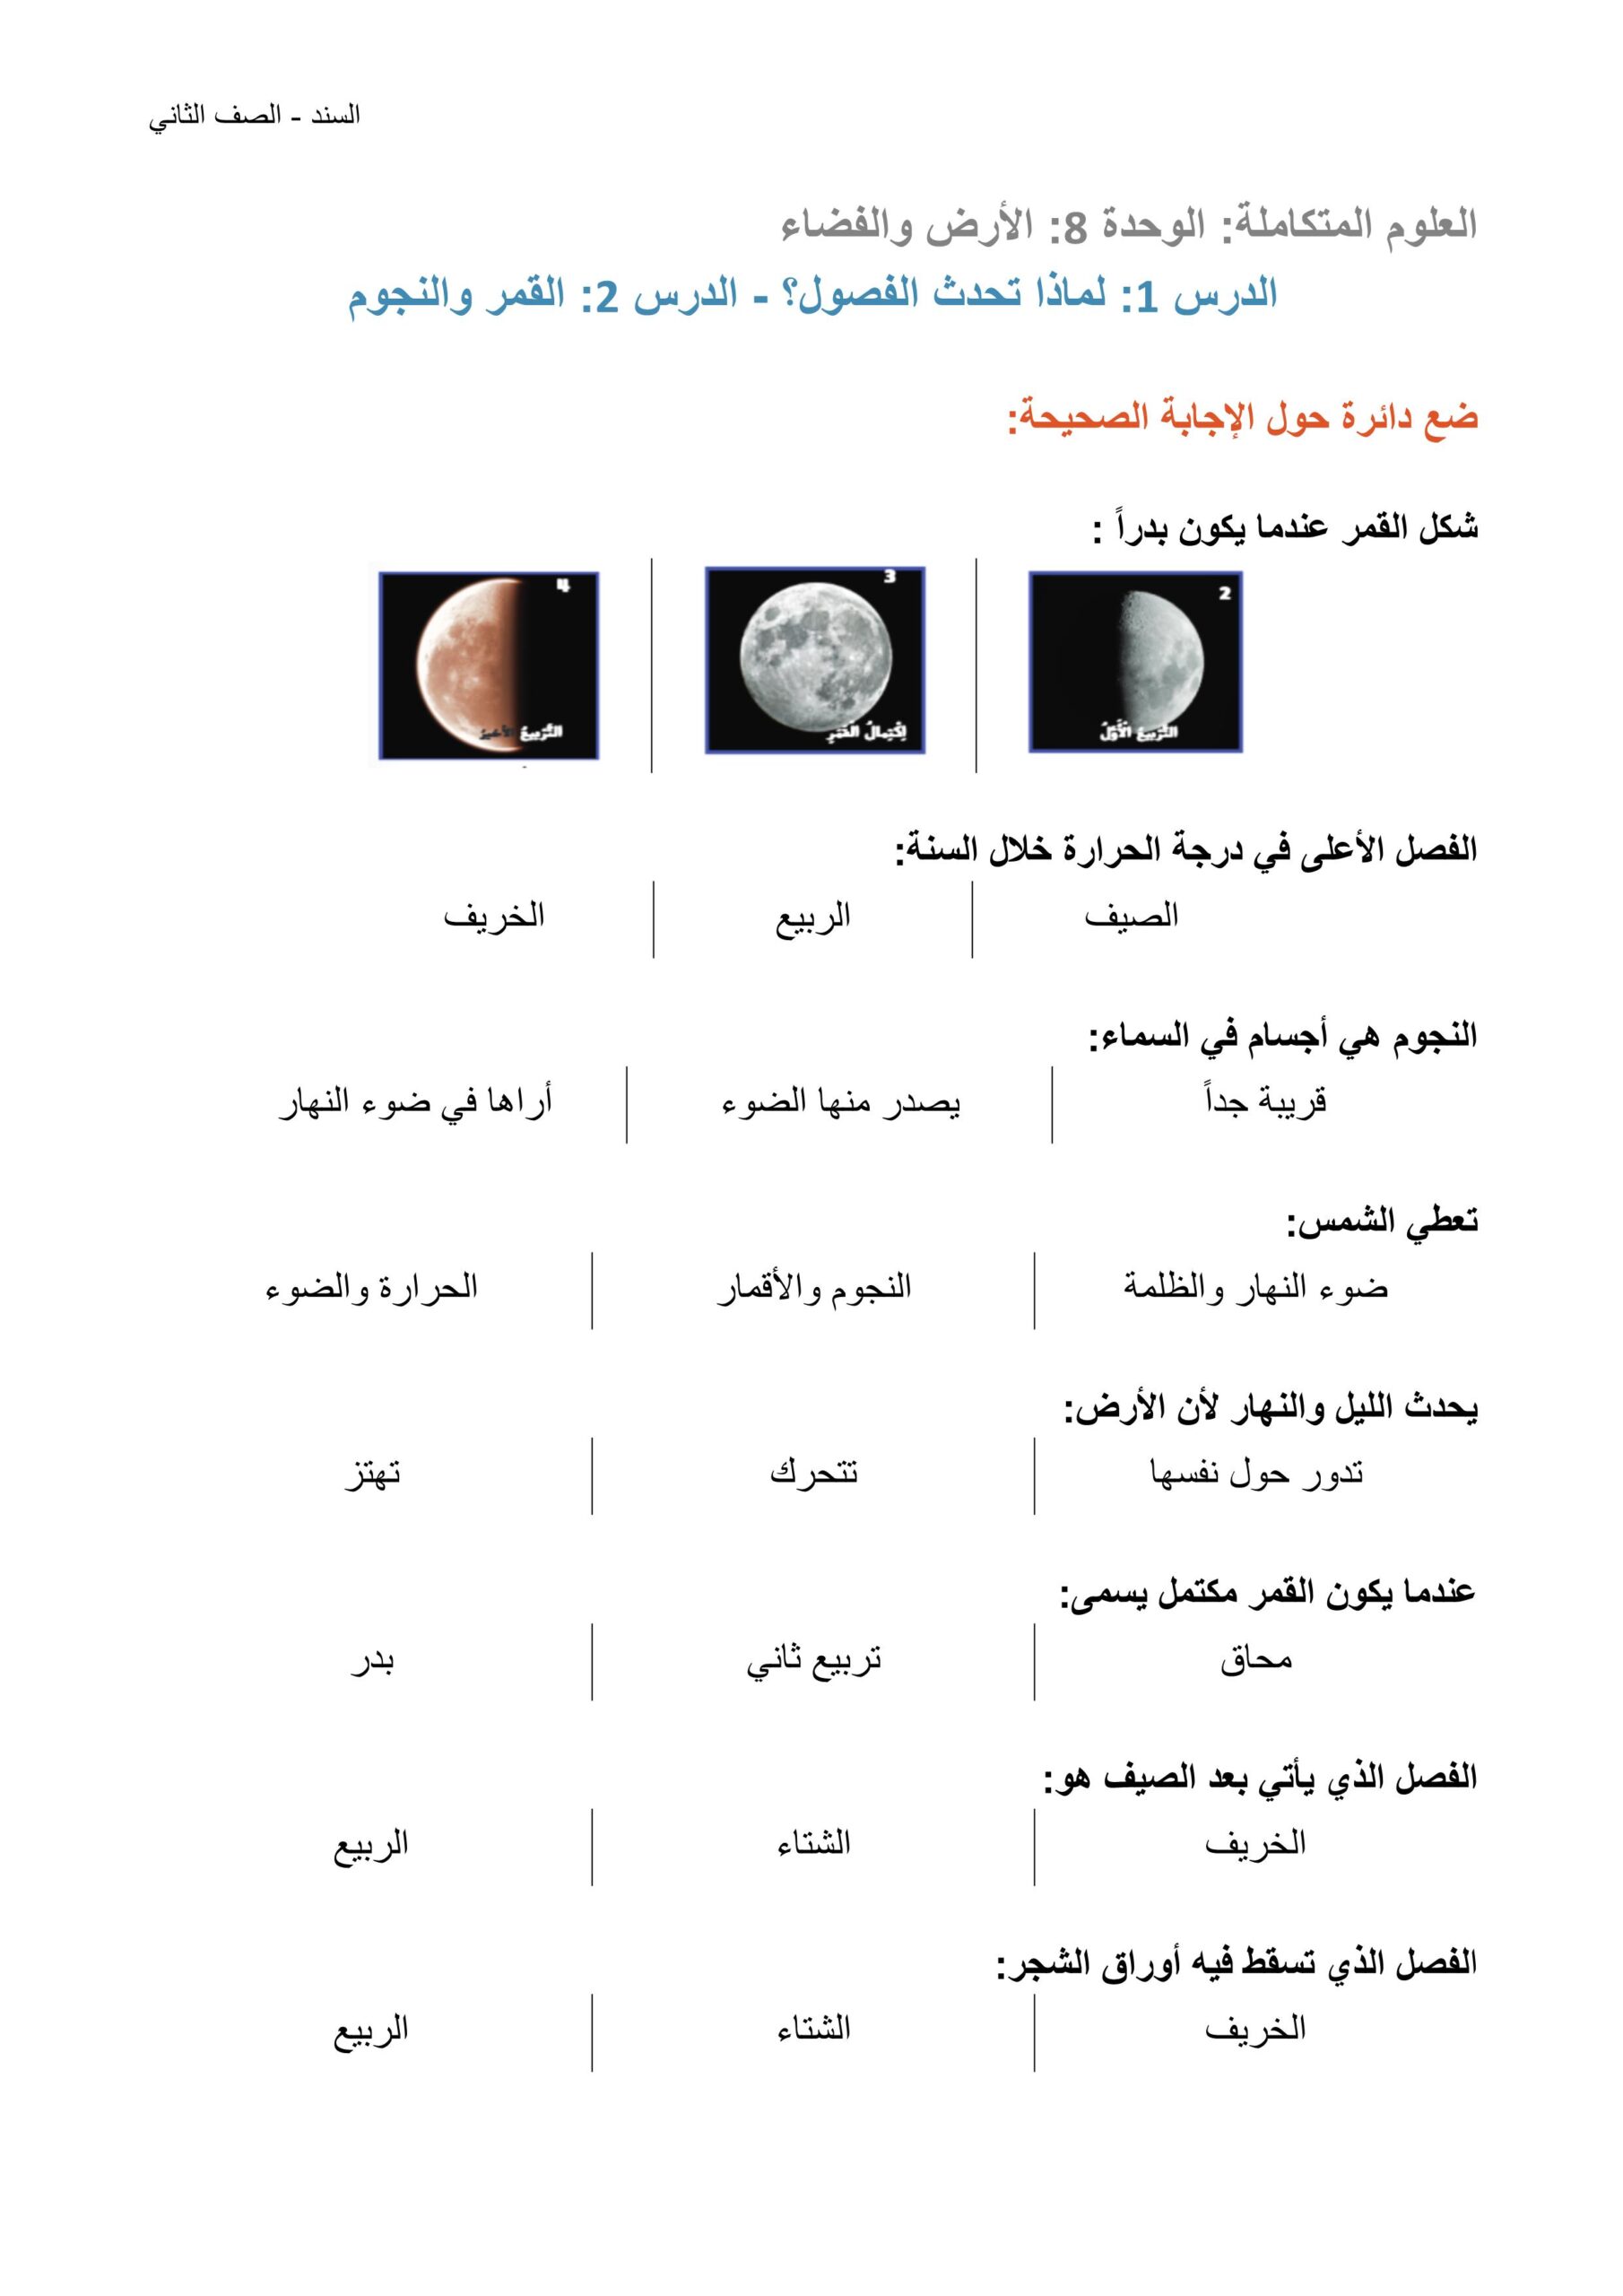 أوراق عمل لماذا تحدث الفصول و القمر والنجوم العلوم المتكاملة الصف الثاني